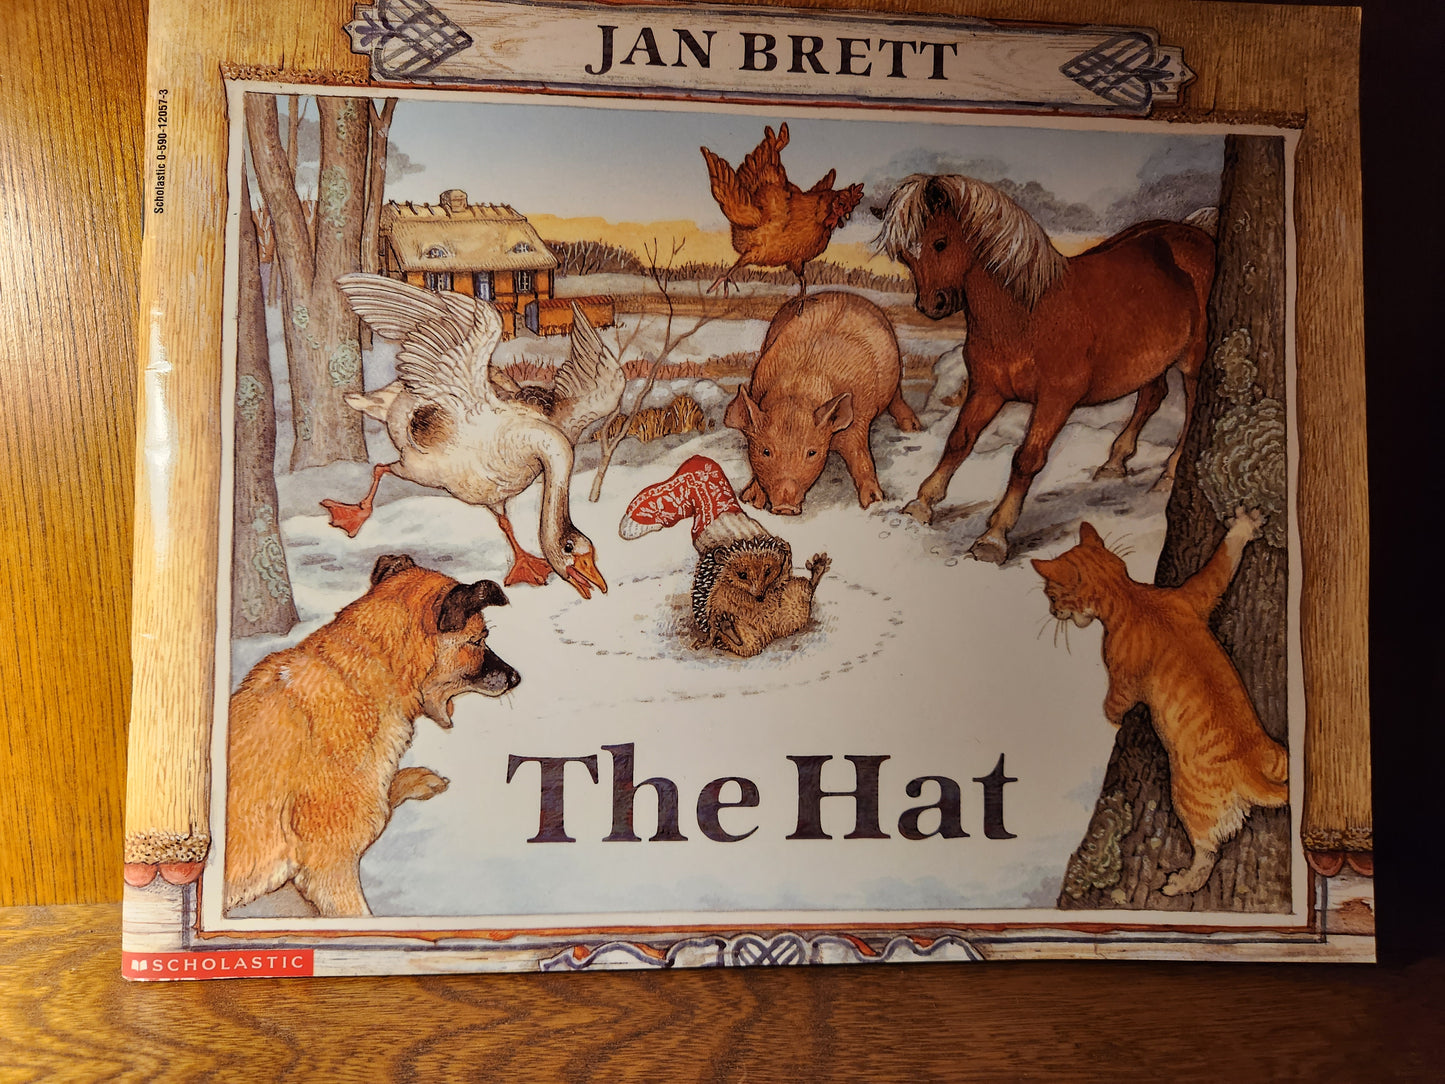 "The Hat" by Jan Brett